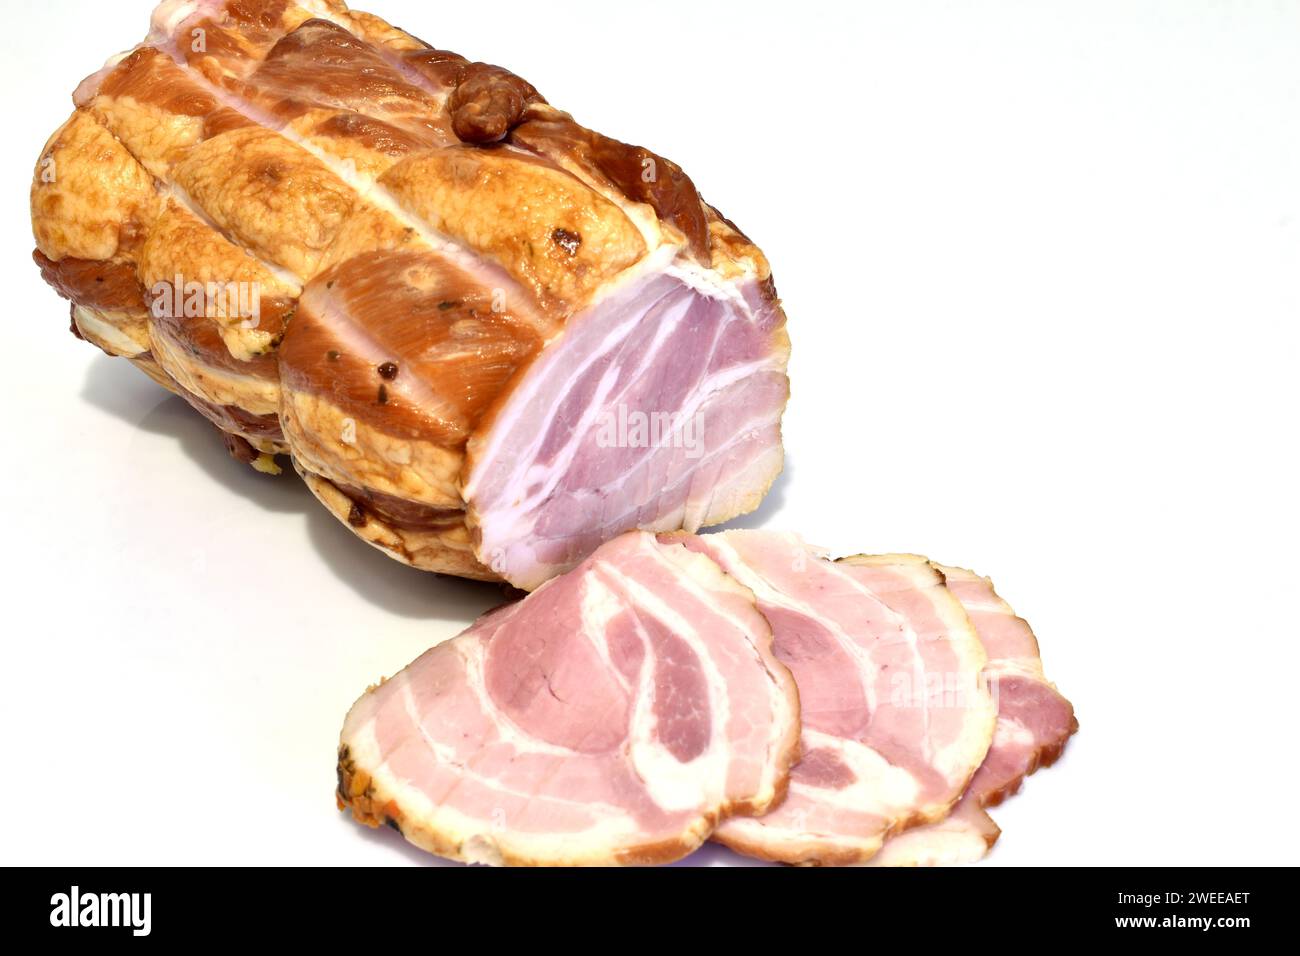 La carne e le fette di coppetta tagliate da essa giacciono su uno sfondo bianco. Foto Stock